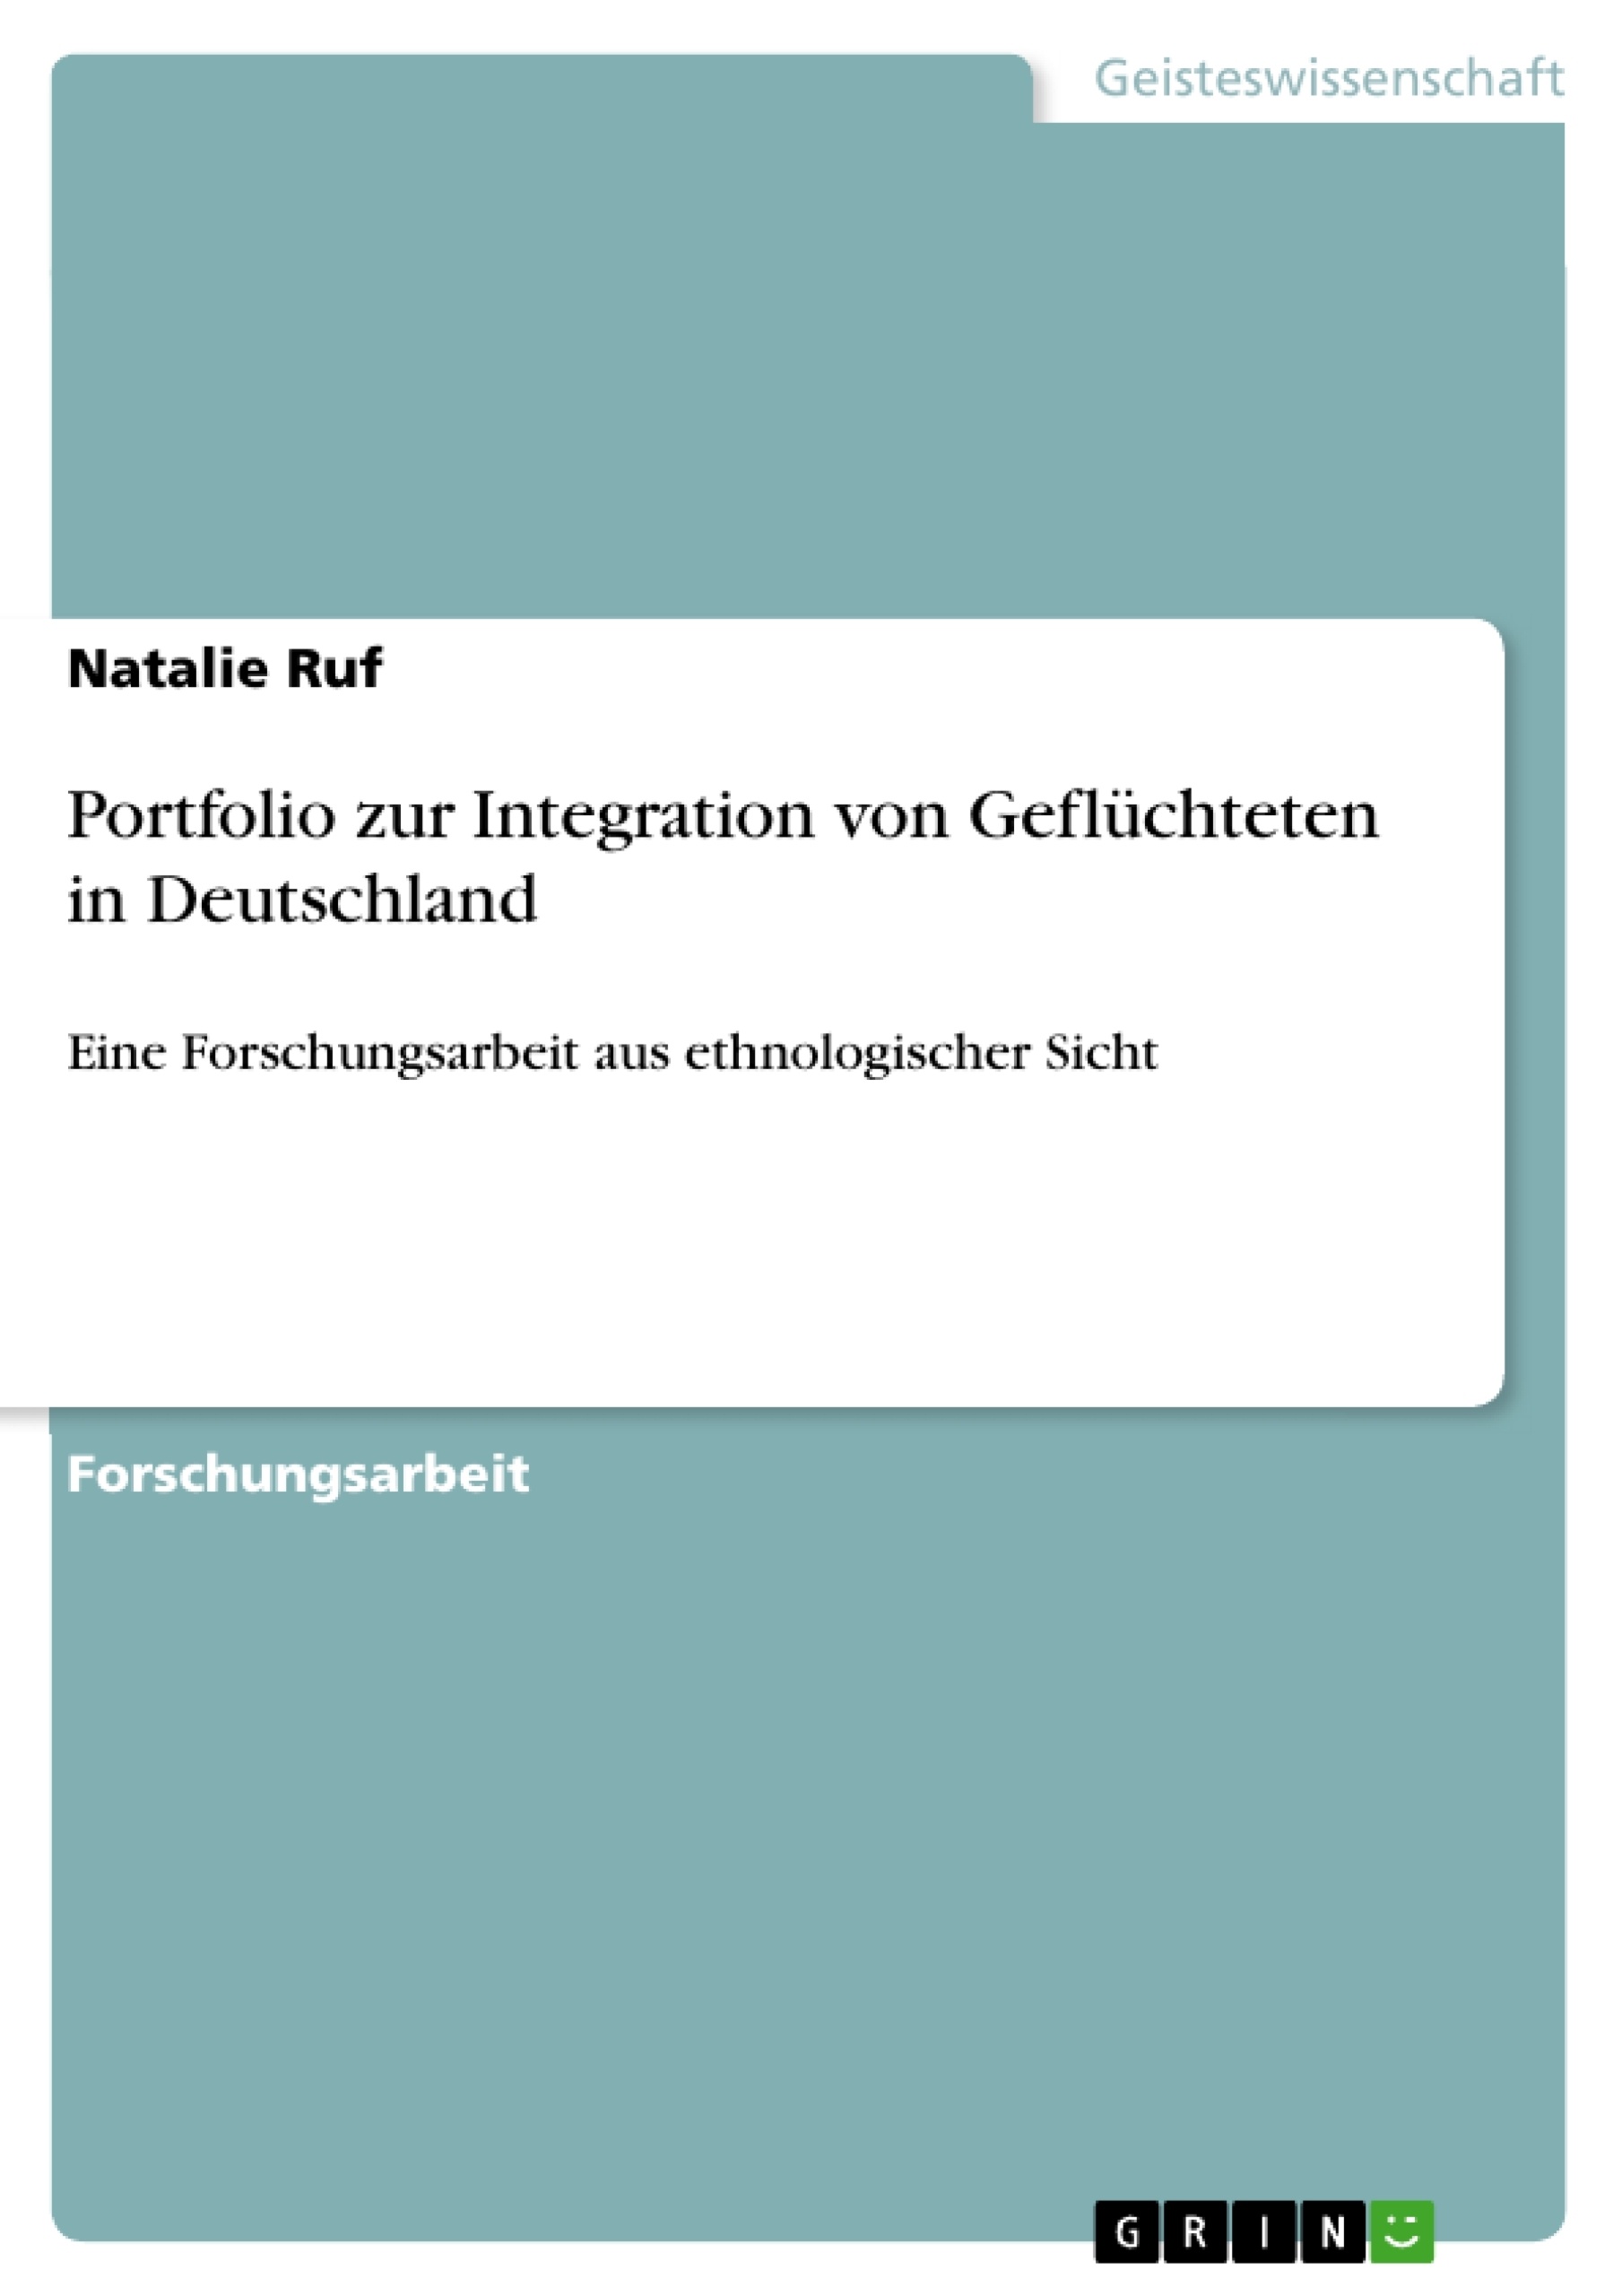 Title: Portfolio zur Integration von Geflüchteten in Deutschland